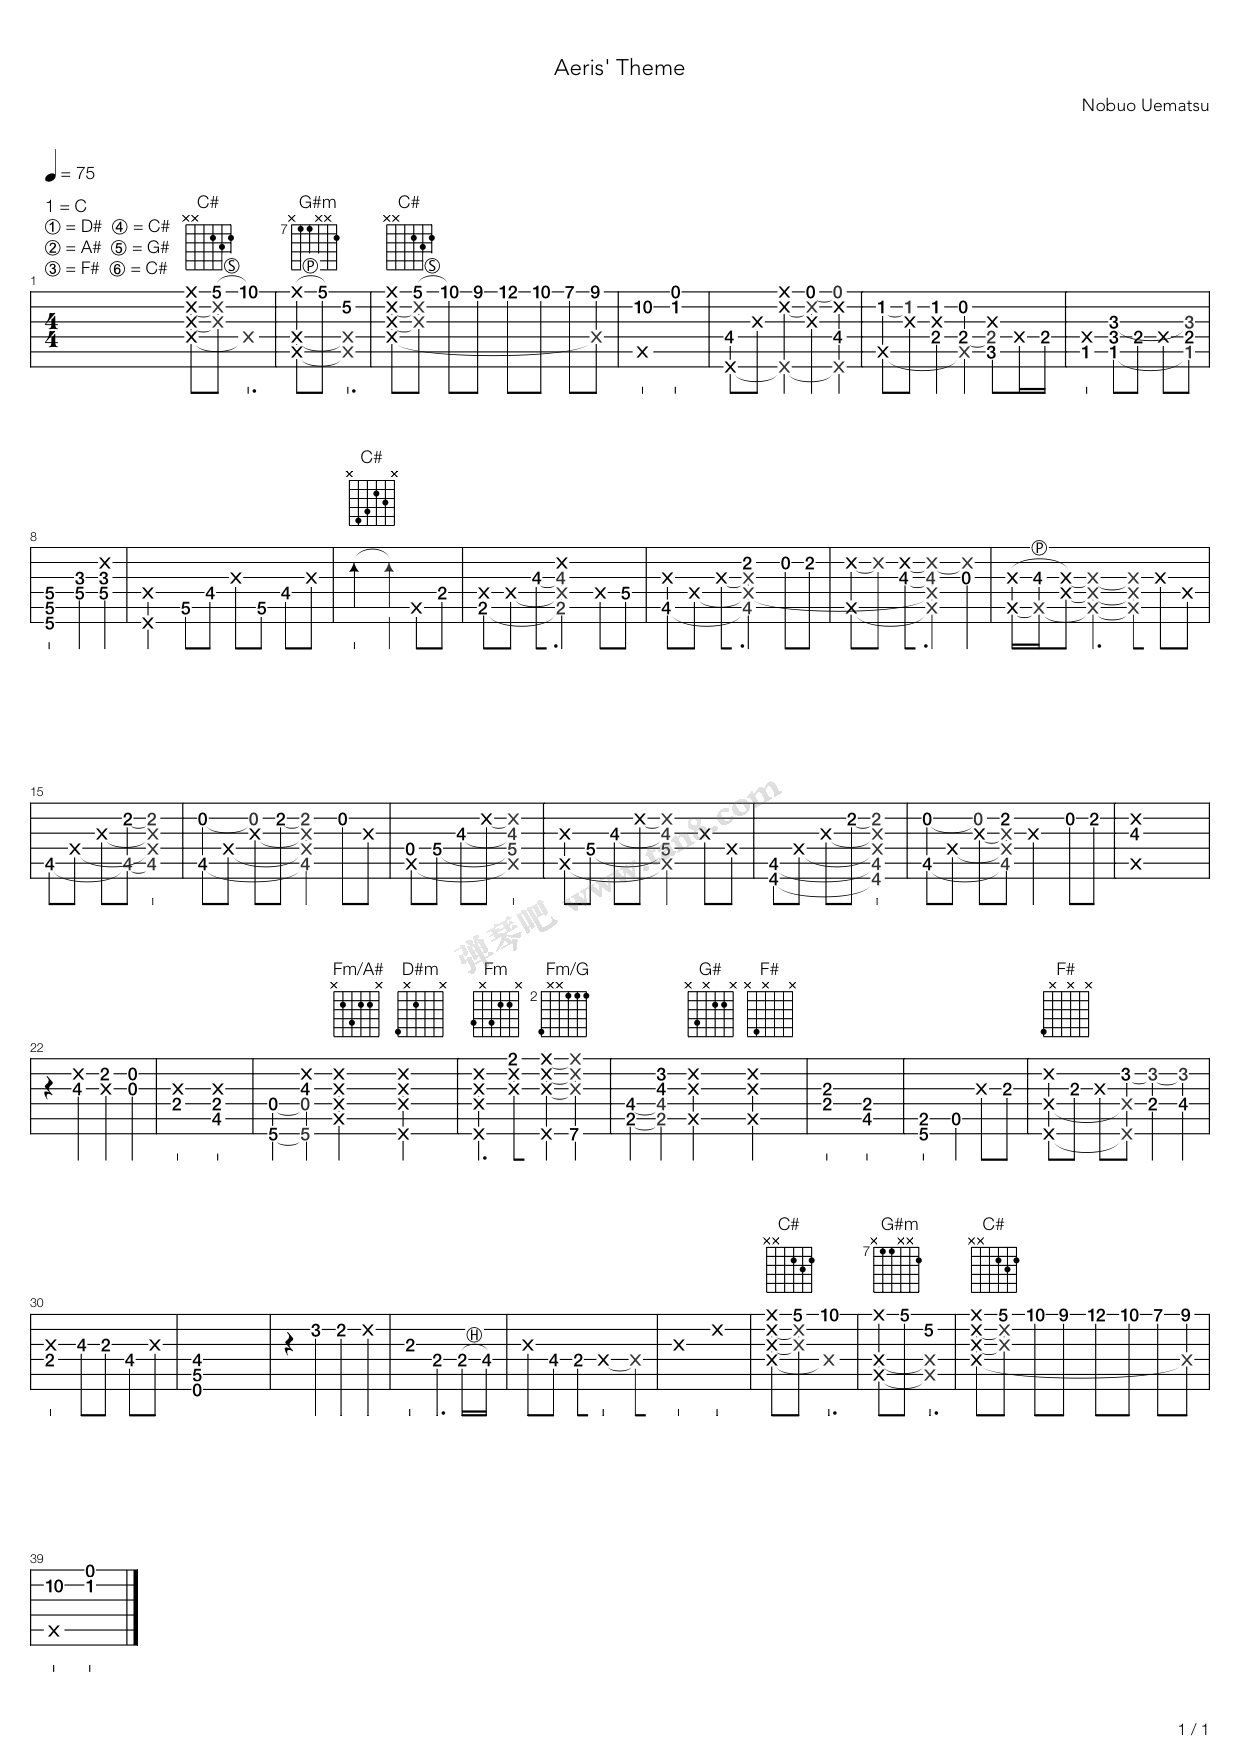 吉他谱 >>《最终幻想7 - aeris theme》,植松伸夫